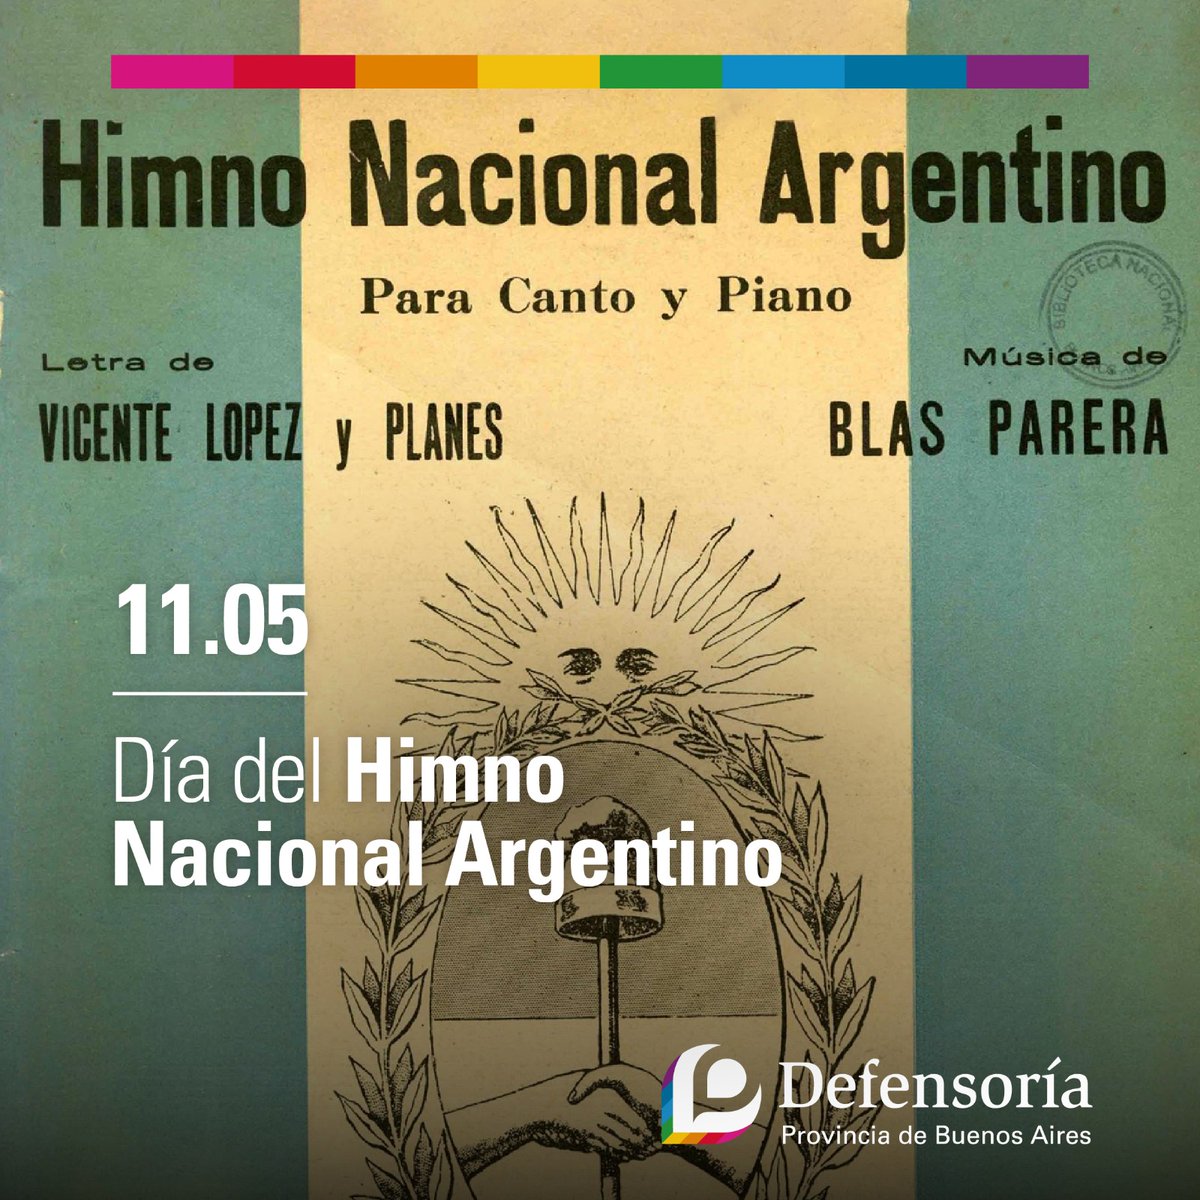 🇦🇷 11.05 I Día del Himno Nacional Argentino

#SomosLaDefensoria #PodemosAyudarte